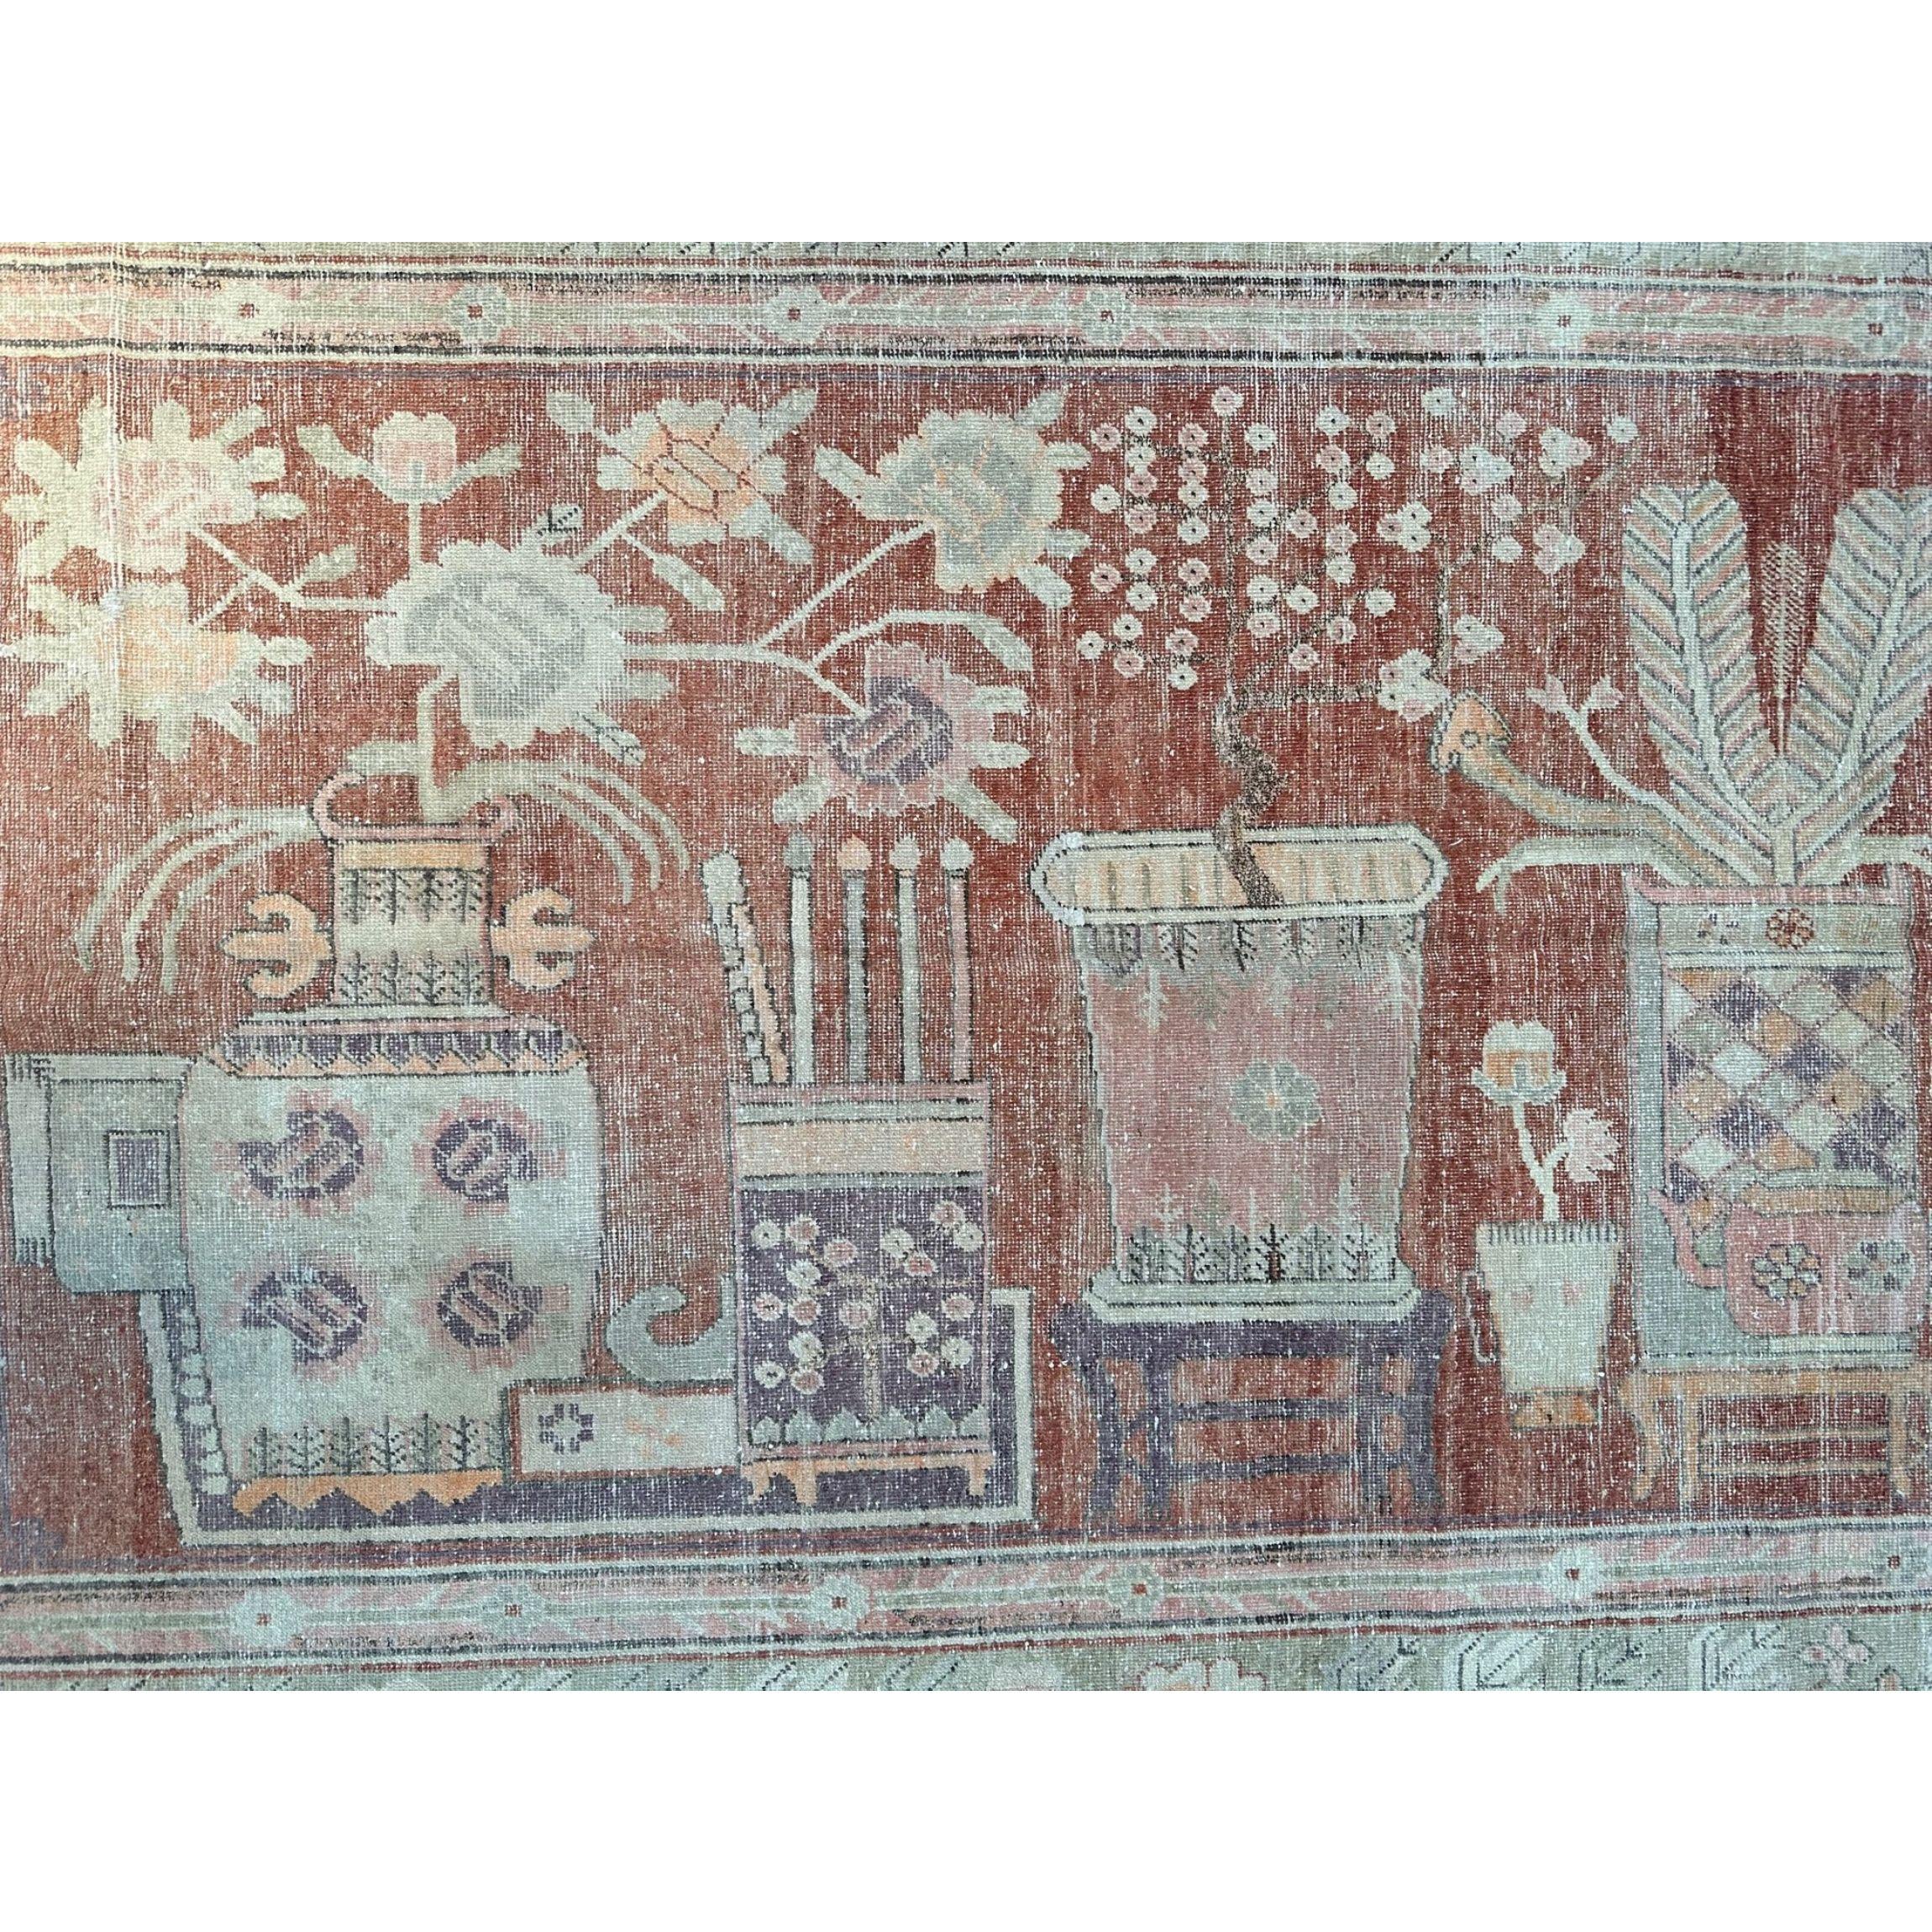 Die Wüstenoase Khotan war eine wichtige Station auf der Seidenstraße. Die Einwohner von Khotan waren erfahrene Teppichweber, die hochwertige antike Teppiche für den internen Gebrauch und den Handel herstellten. Samarkand-Teppiche erreichten den